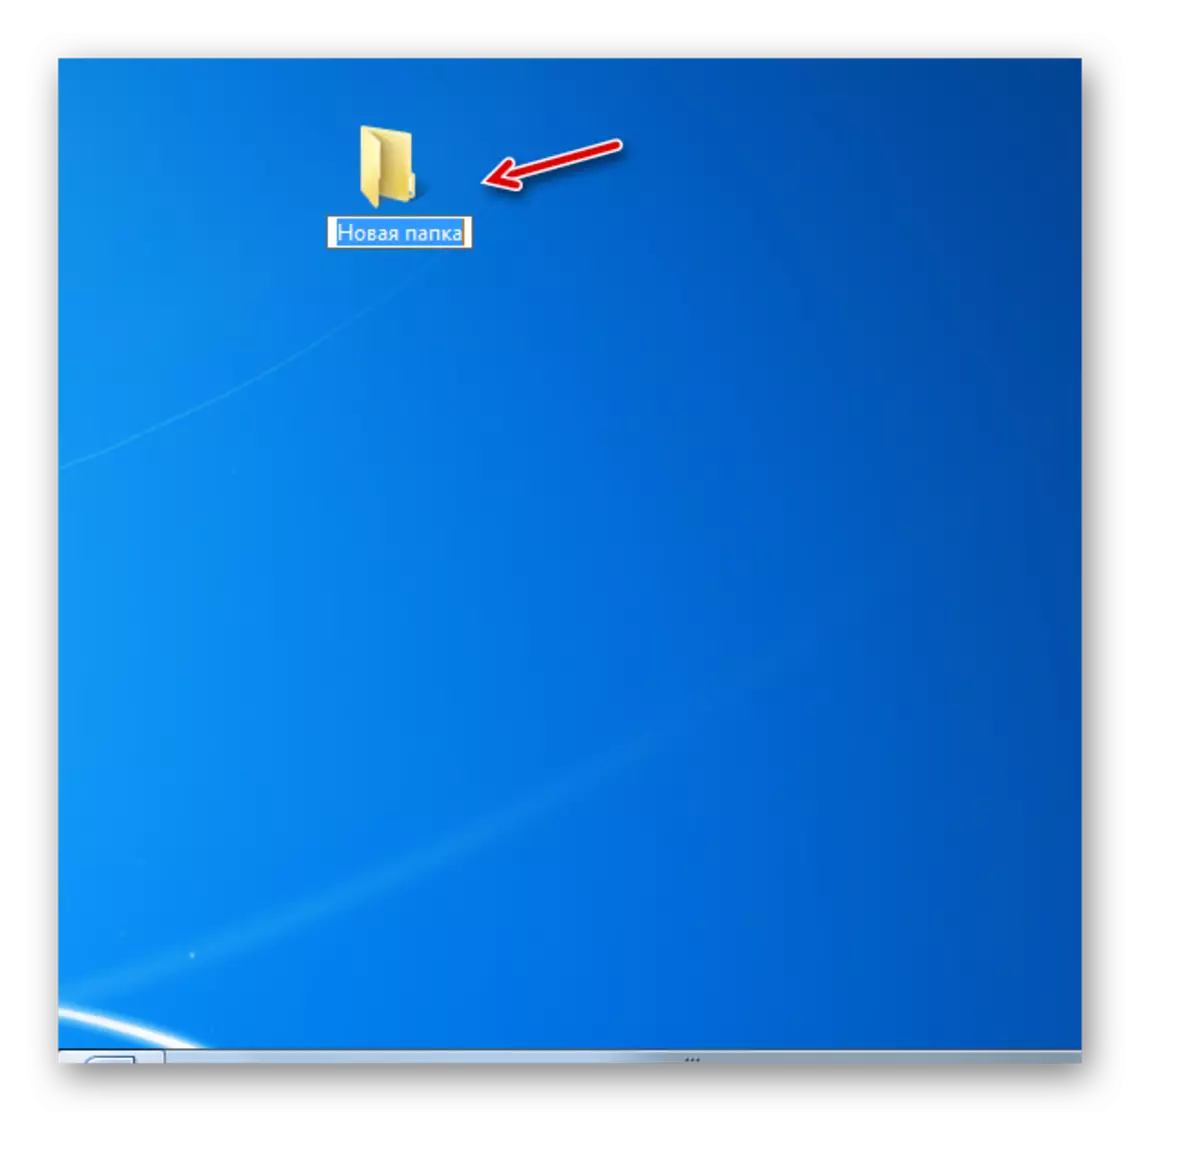 Dosja e krijuar në desktop në Windows 7